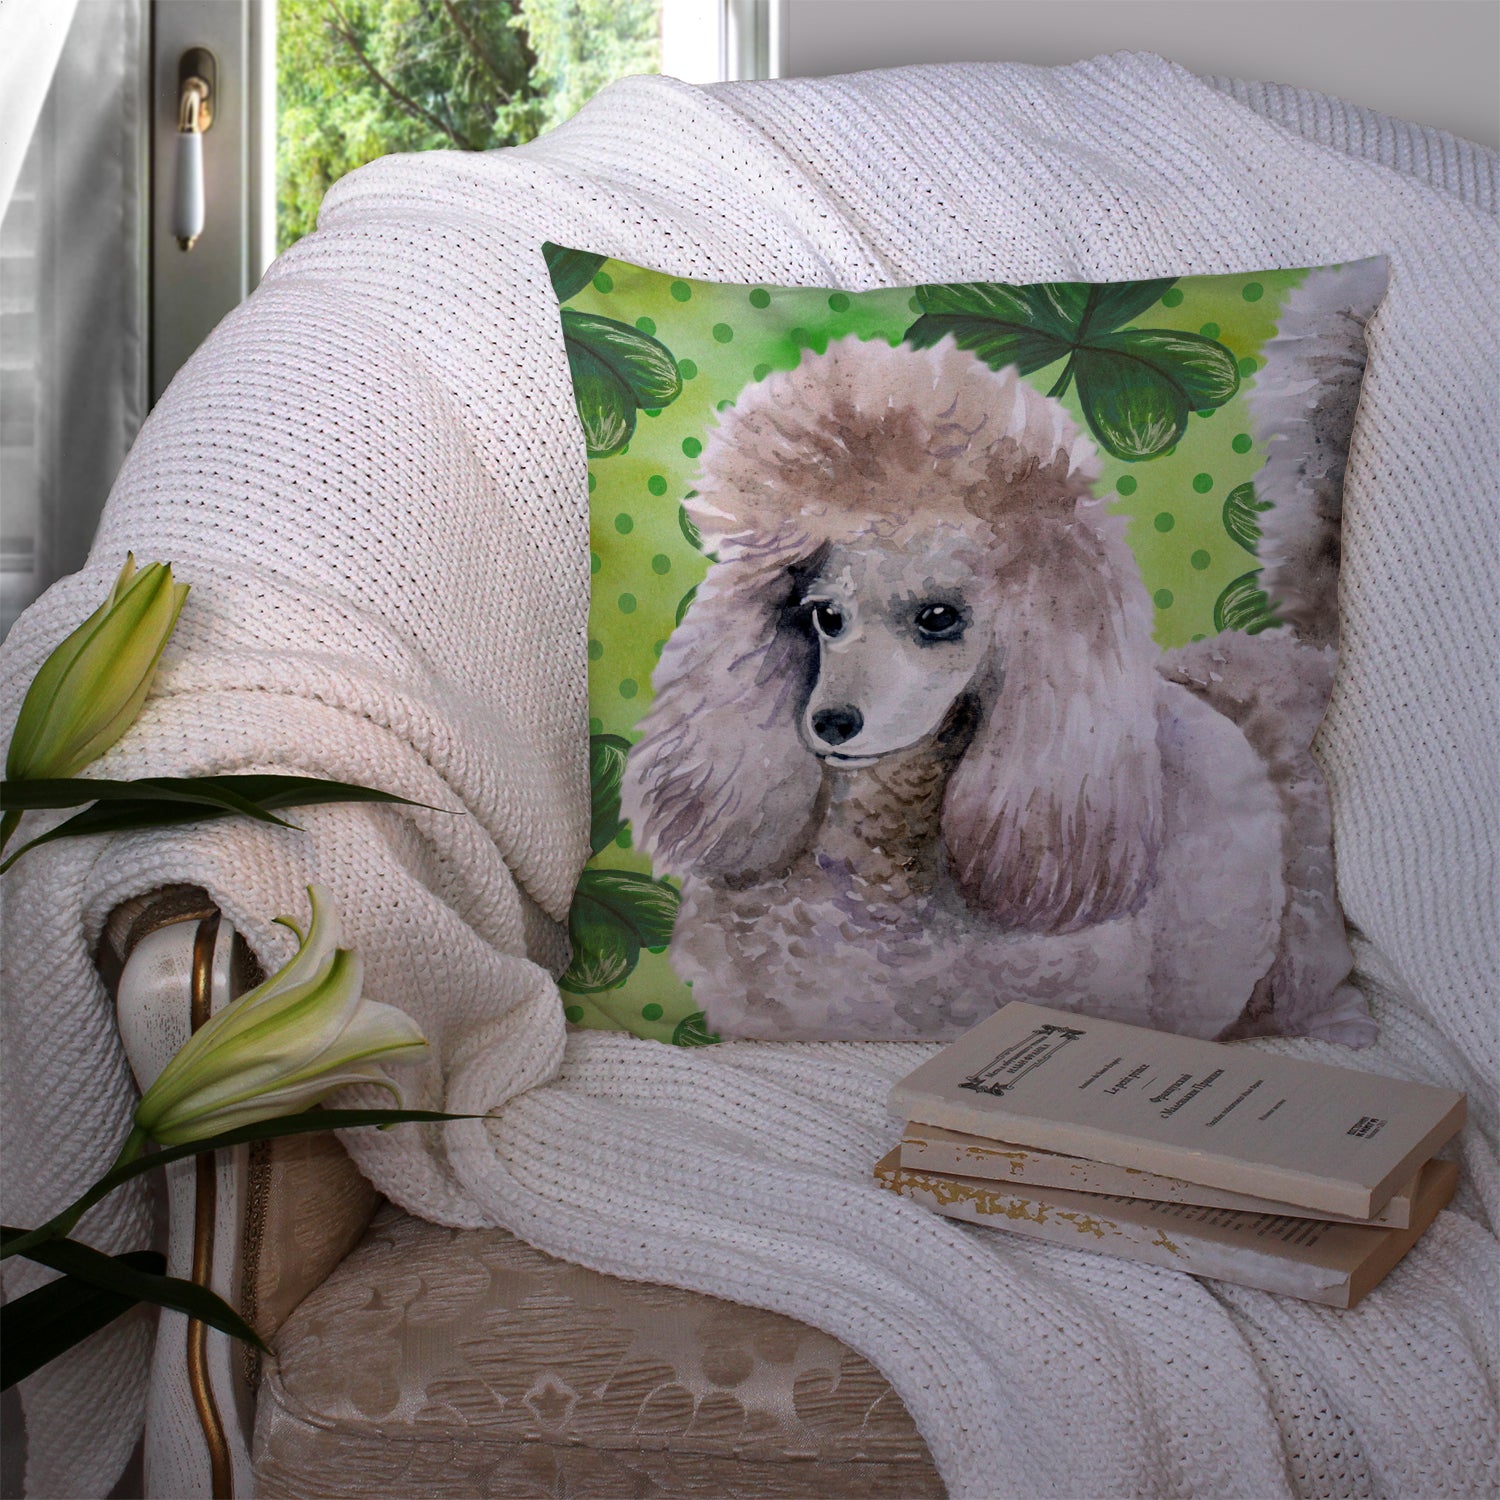 Poodle St Patrick's Fabric Decorative Pillow BB9839PW1414 - the-store.com